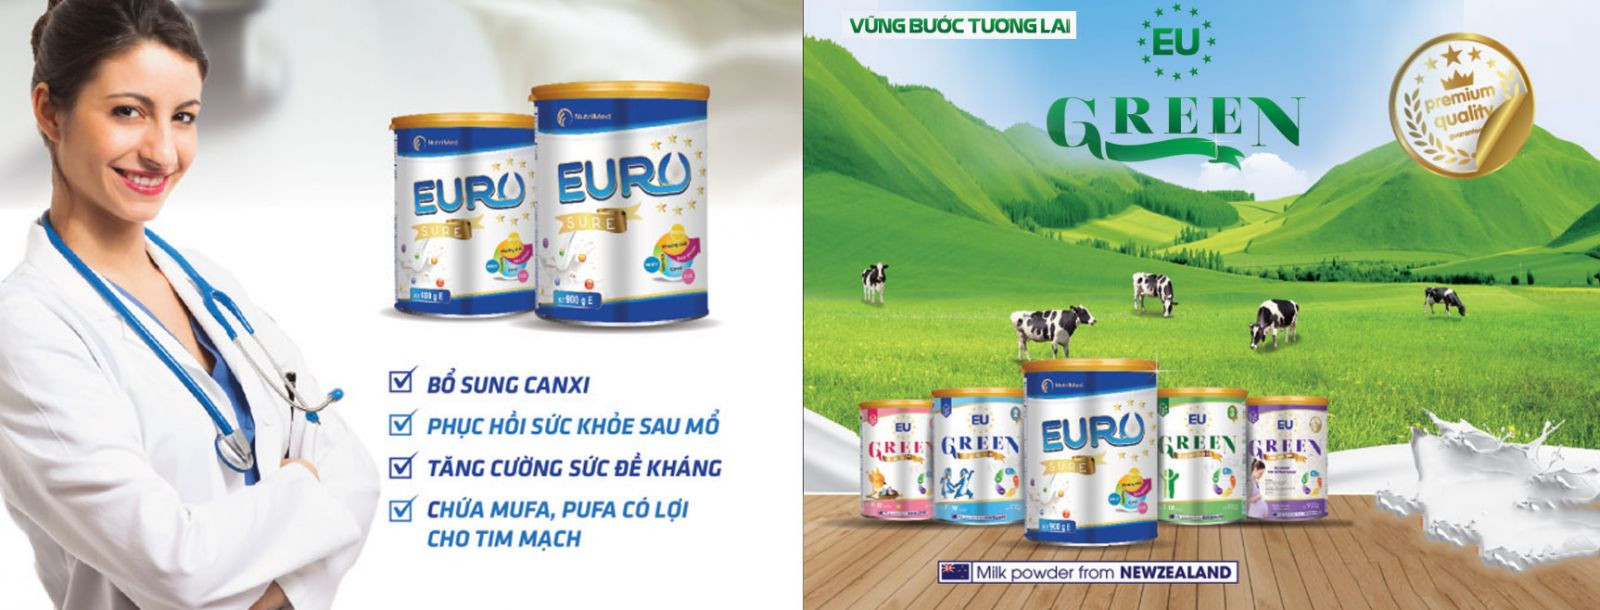 Mua Sữa Euro Sure chính hãng ở đâu, giá bao nhiêu?